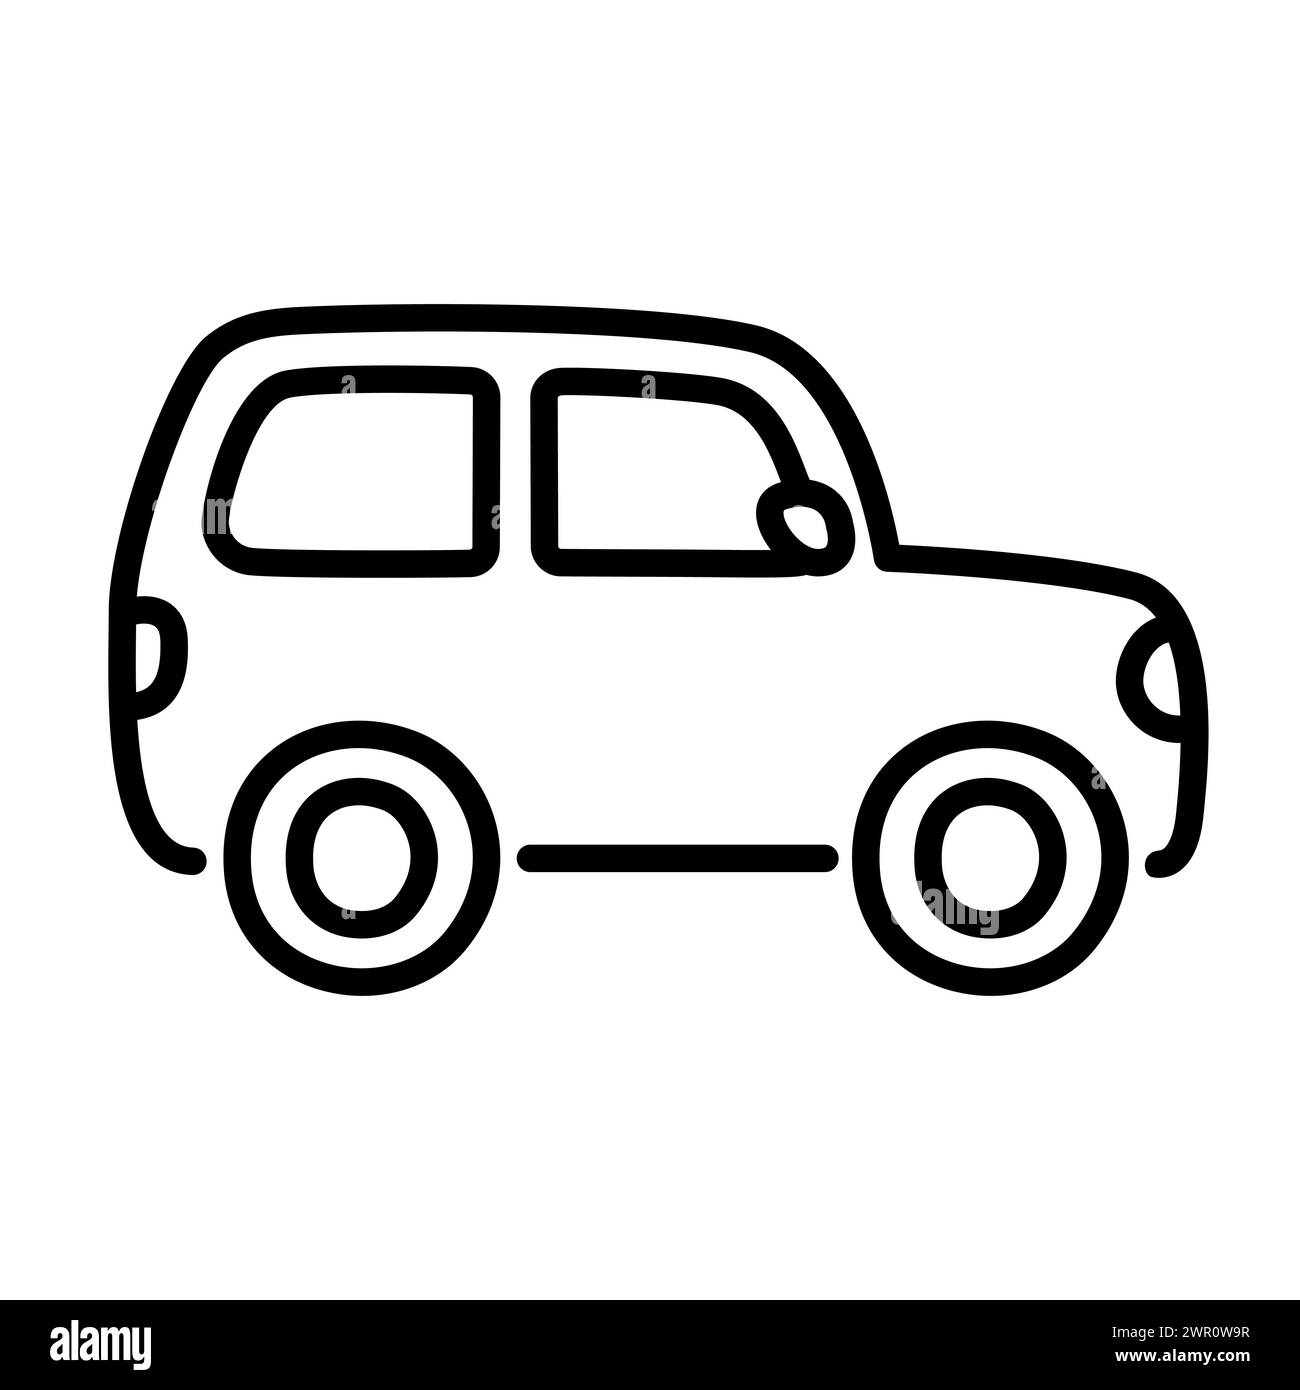 Fuera de carretera mini SUV línea de coche icono en lindo estilo de doodle dibujado a mano de dibujos animados. Vector clip art ilustración. Ilustración del Vector